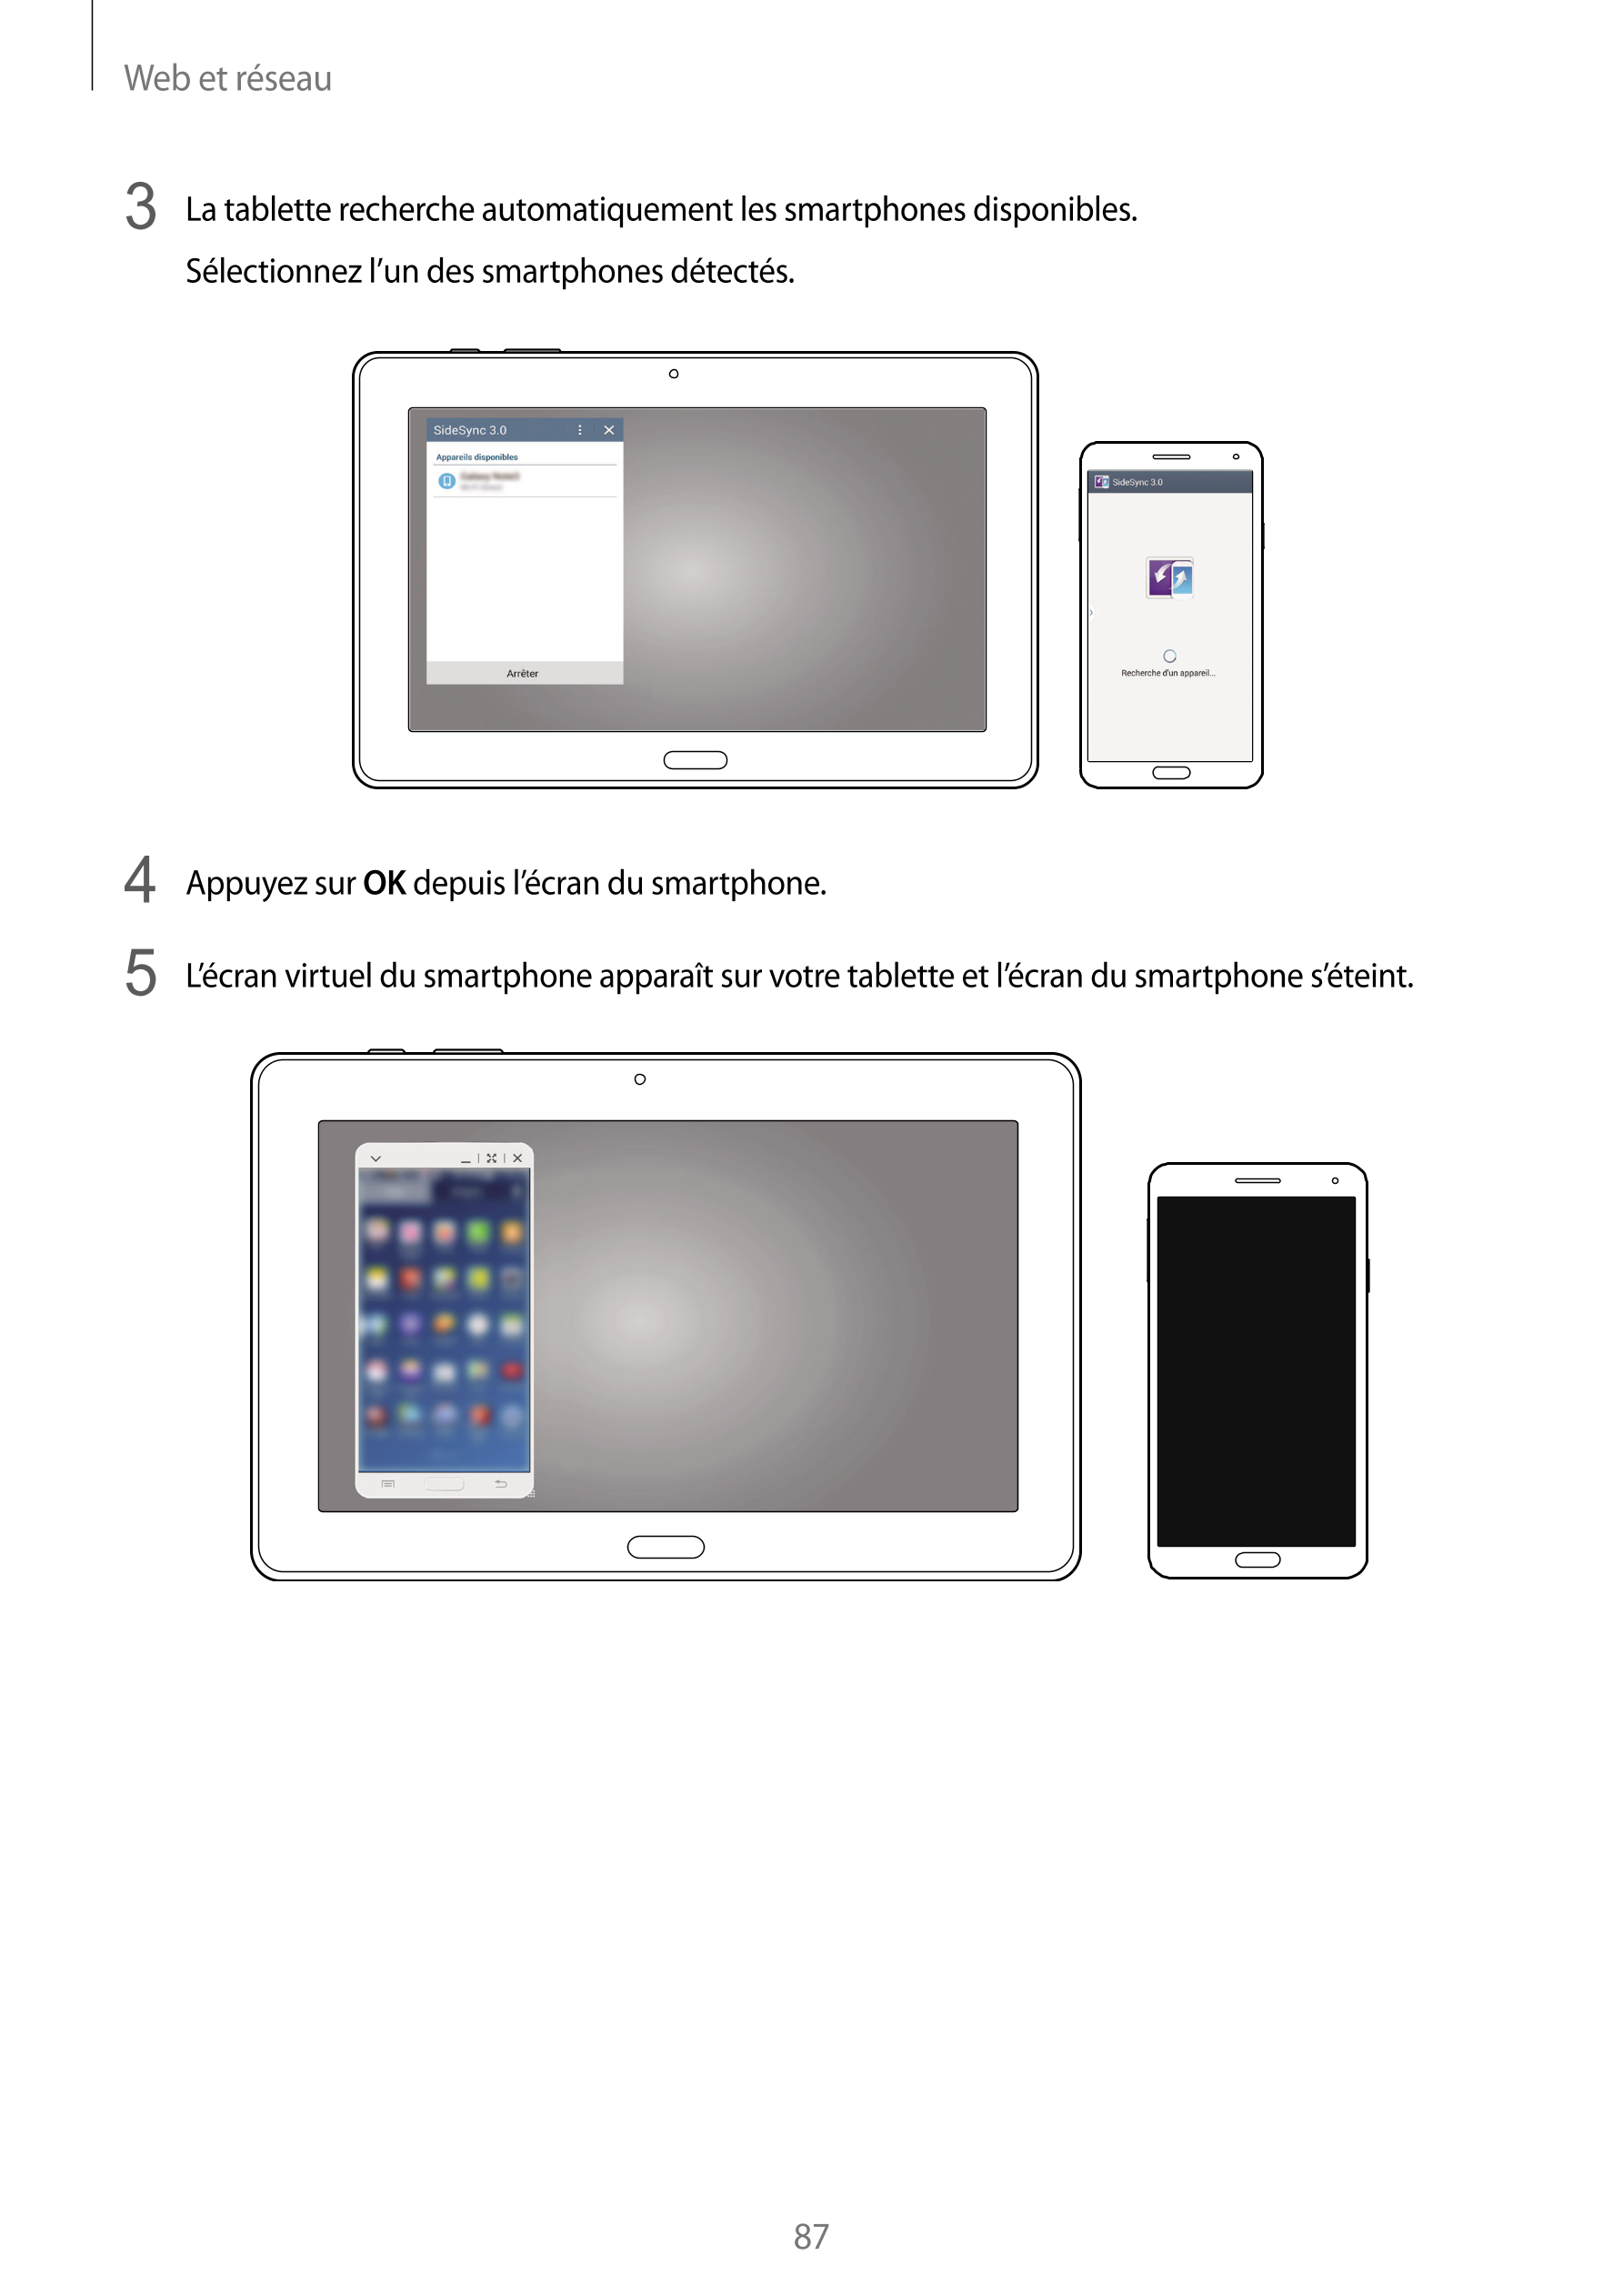 Web et réseau
3  La tablette recherche automatiquement les smartphones disponibles.
Sélectionnez l’un des smartphones détectés.
